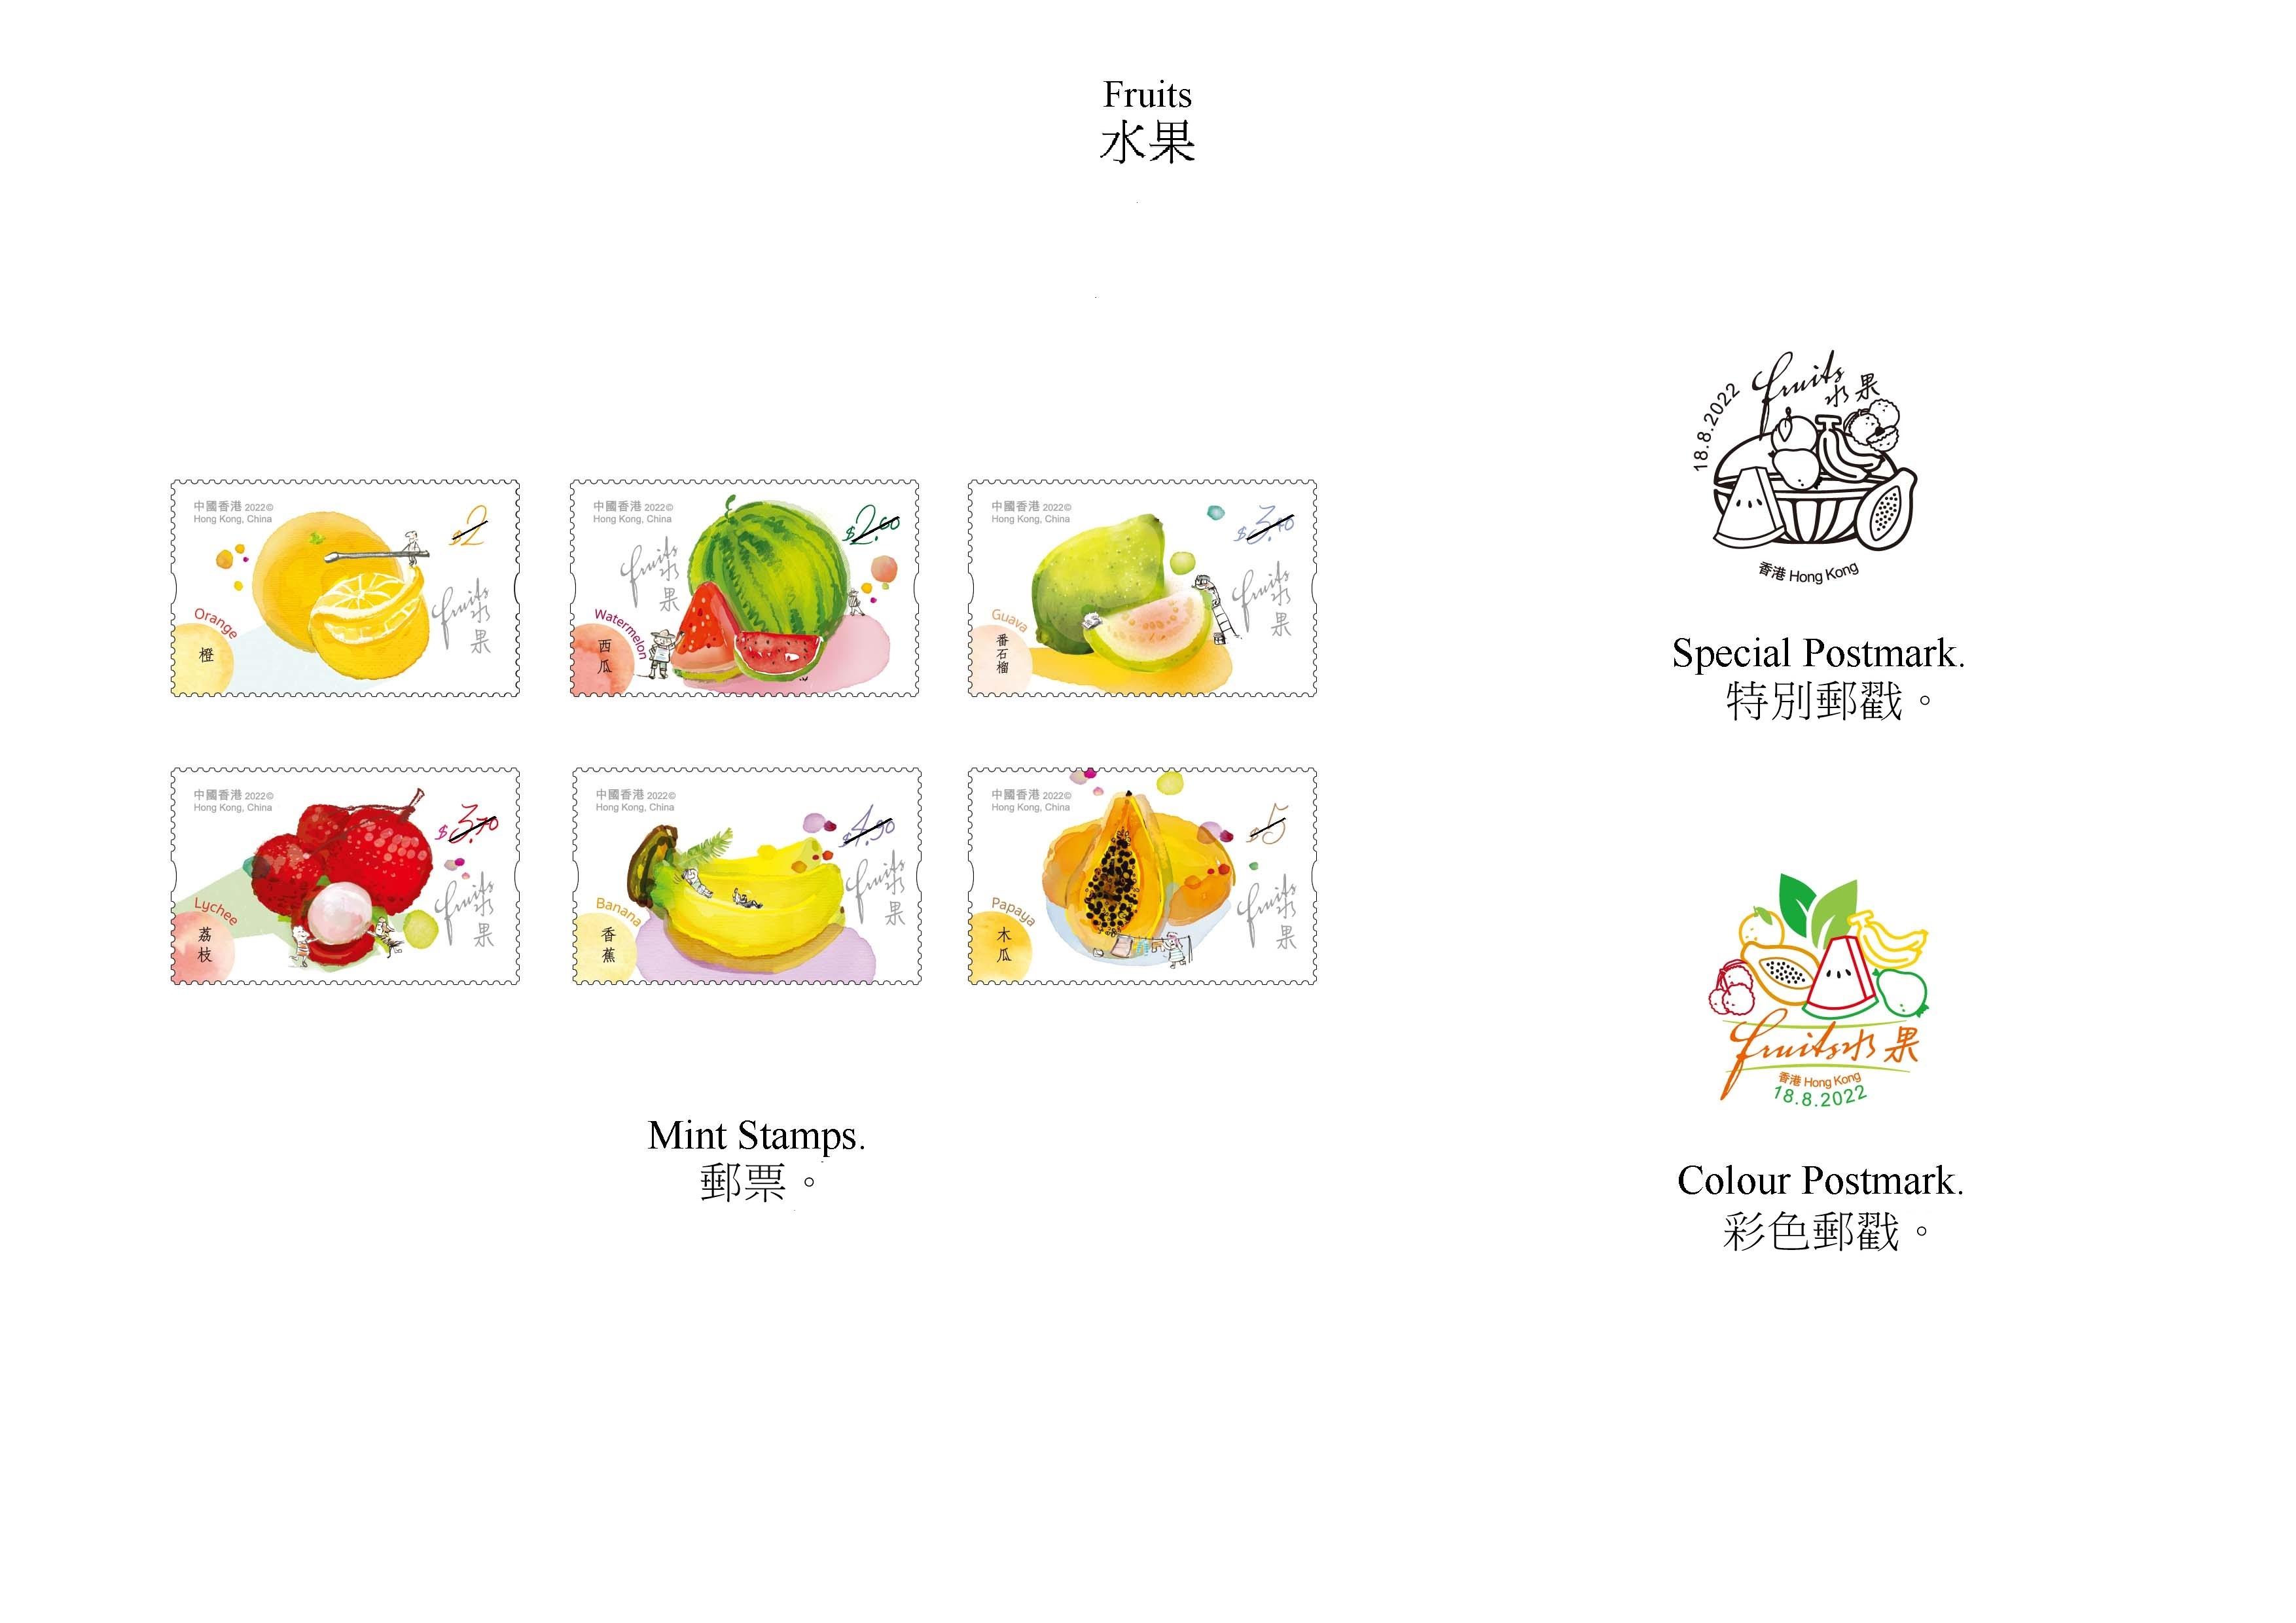 香港邮政八月十八日（星期四）发行以「水果」为题的特别邮票及相关集邮品。图示邮票、特别邮戳和彩色邮戳。